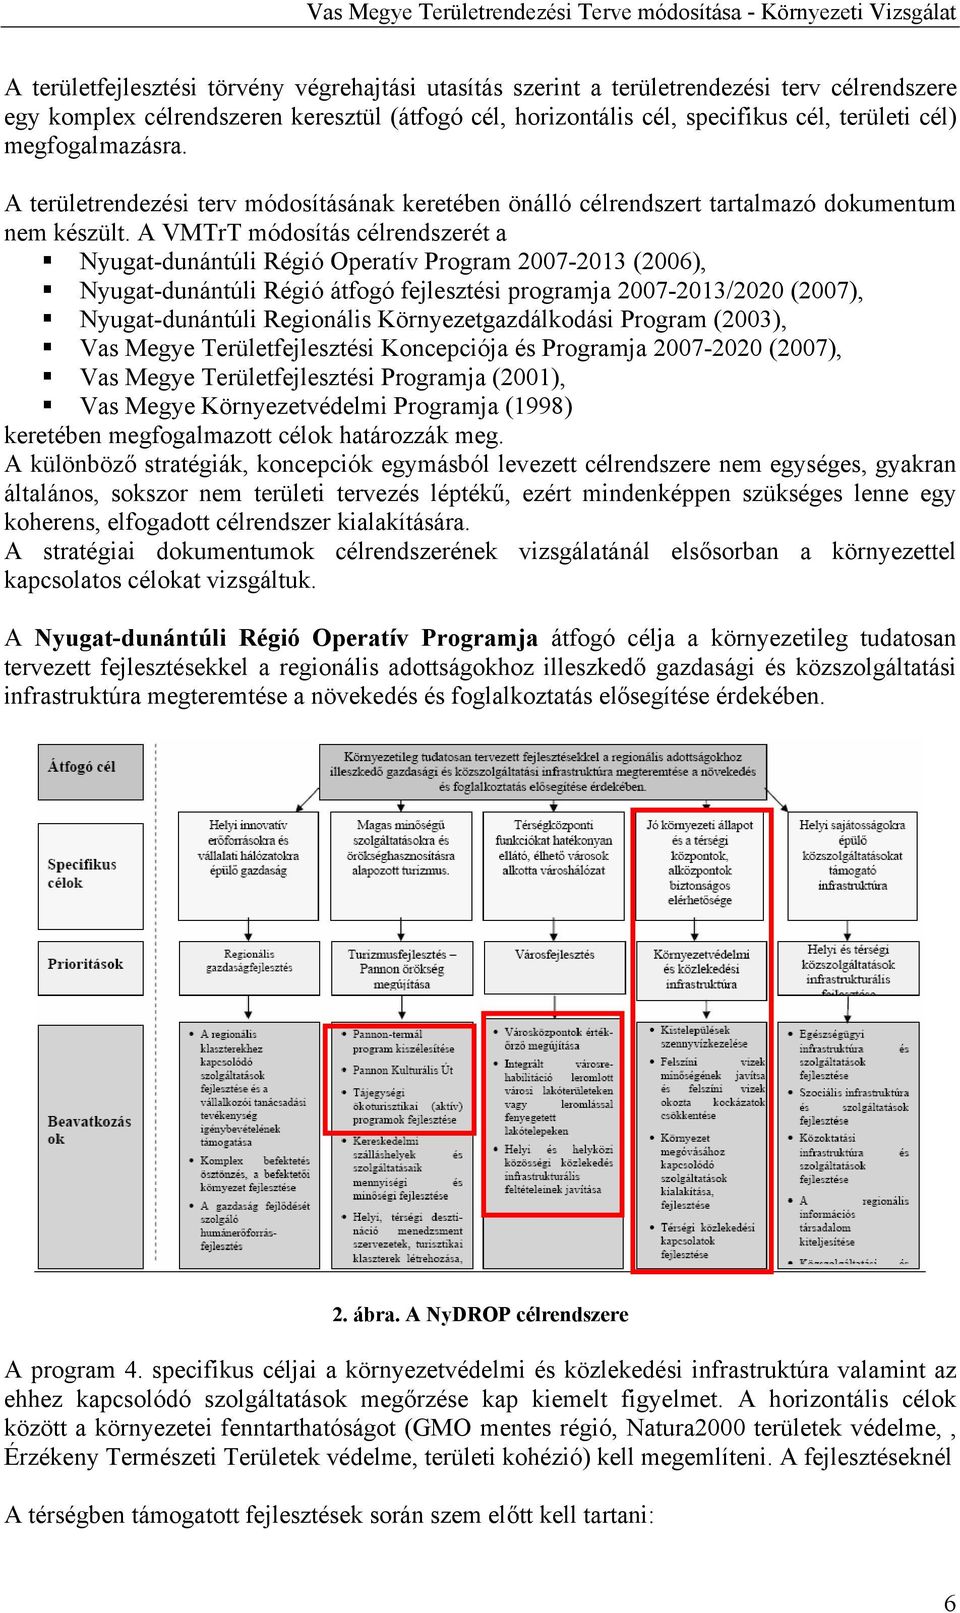 A VMTrT módosítás célrendszerét a Nyugat-dunántúli Régió Operatív Program 2007-2013 (2006), Nyugat-dunántúli Régió átfogó fejlesztési programja 2007-2013/2020 (2007), Nyugat-dunántúli Regionális